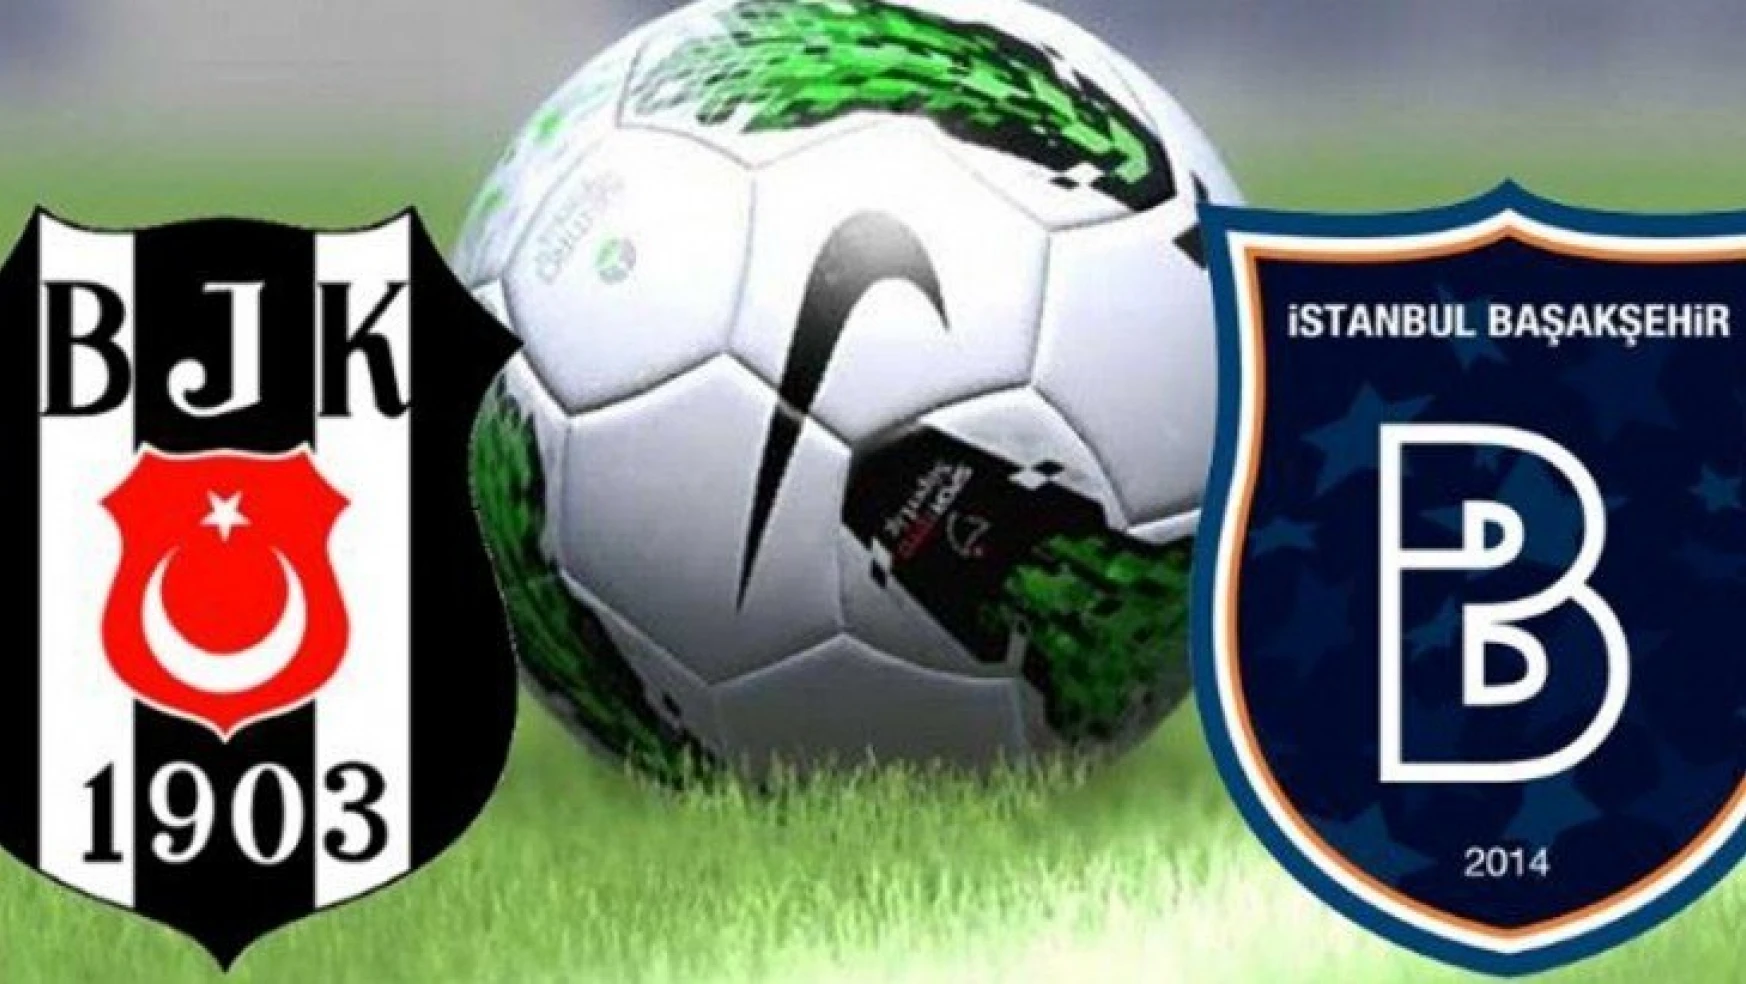 Beşiktaş 3-2 M. Başakşehir